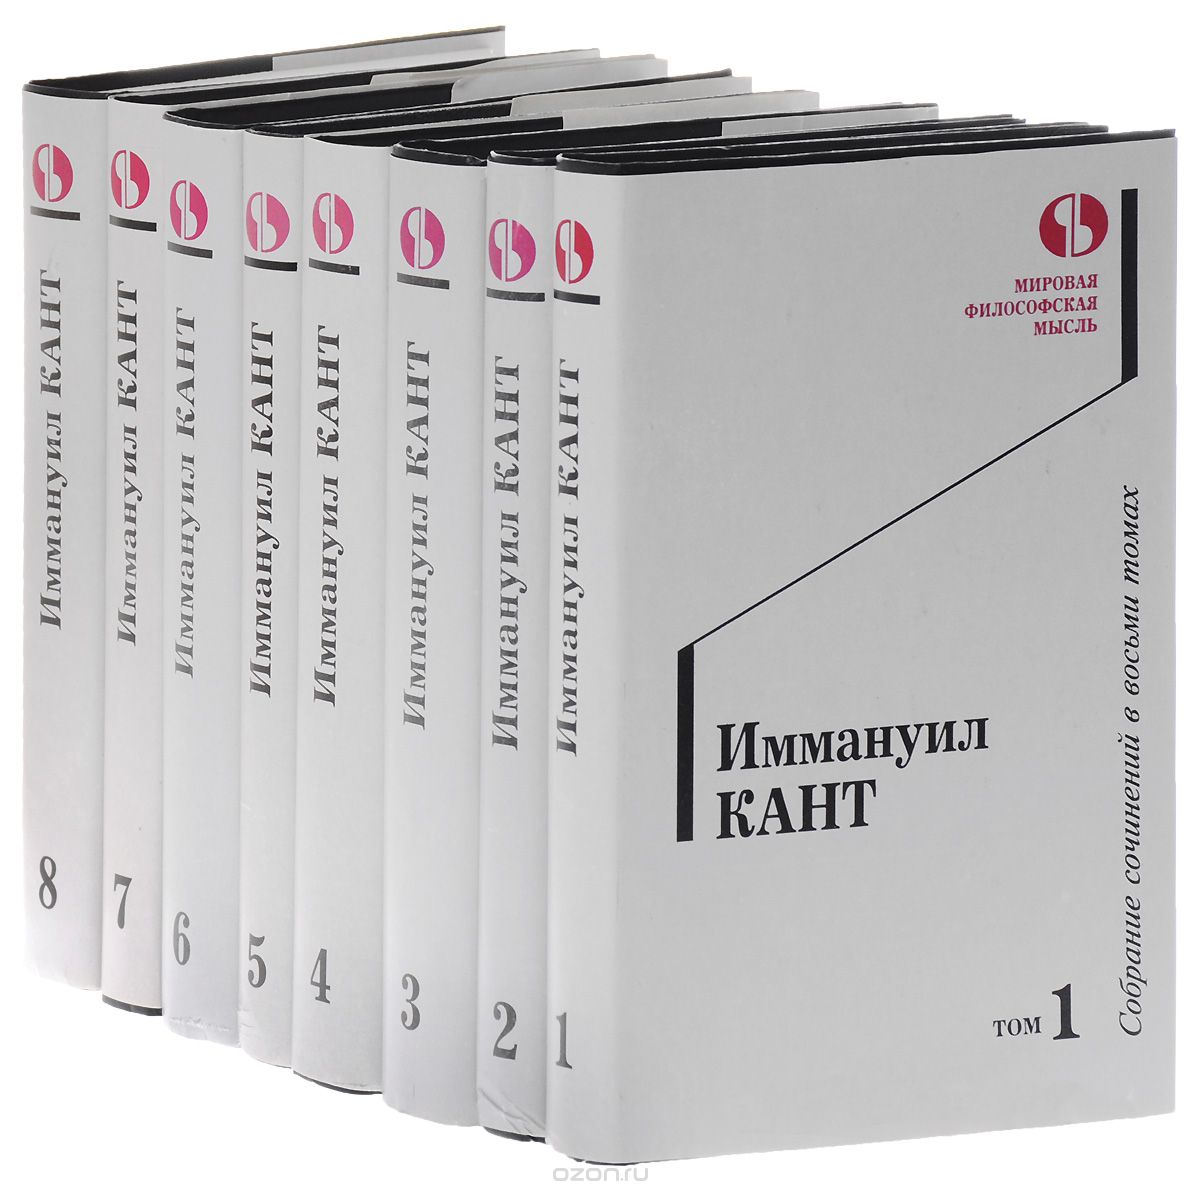 Скачать книгу "Иммануил Кант. Собрание сочинений в 8 томах (комплект), Иммануил Кант"